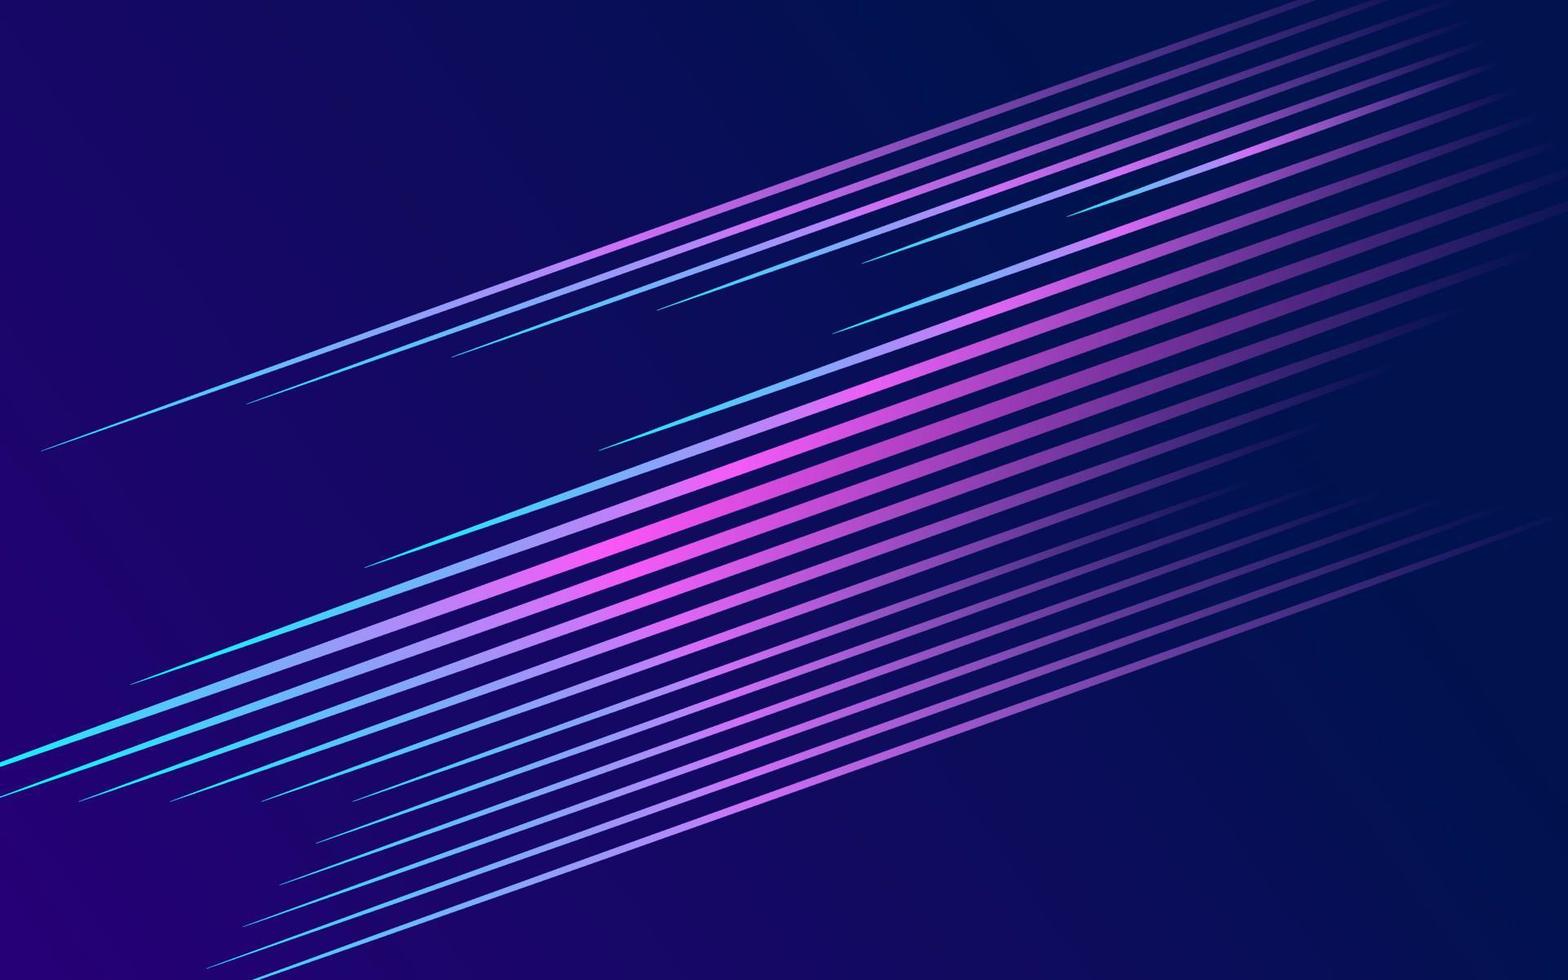 abstrakte tapete aus geraden blauen und violetten linien im dunklen raum, textur von neonlicht, abdeckungshintergrund. technologie dynamisches energiekonzept für banner oder flyer. vektor